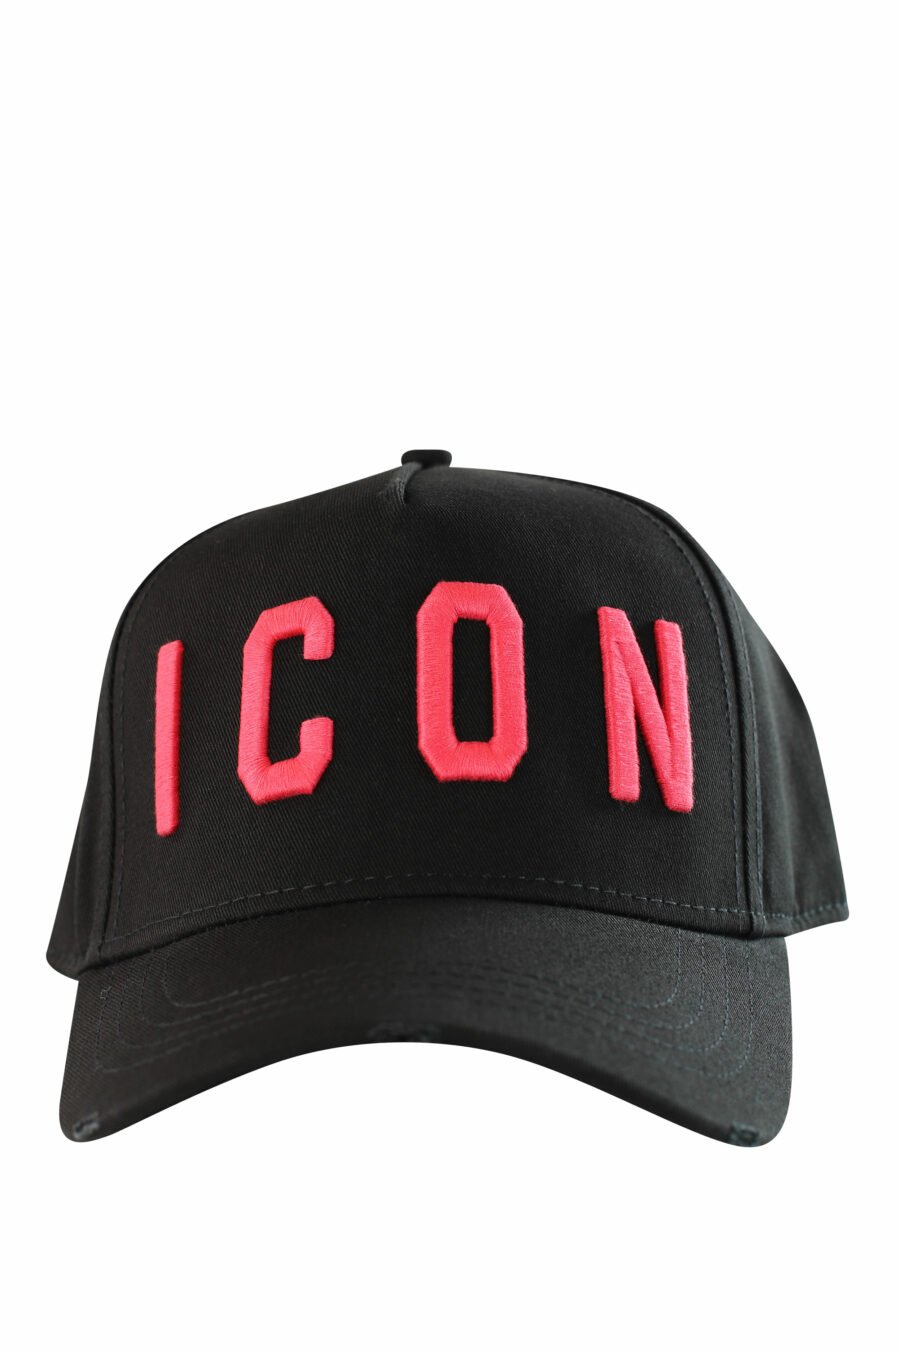 Gorra negra con logo "icon" fucsia bordado - IMG 1213